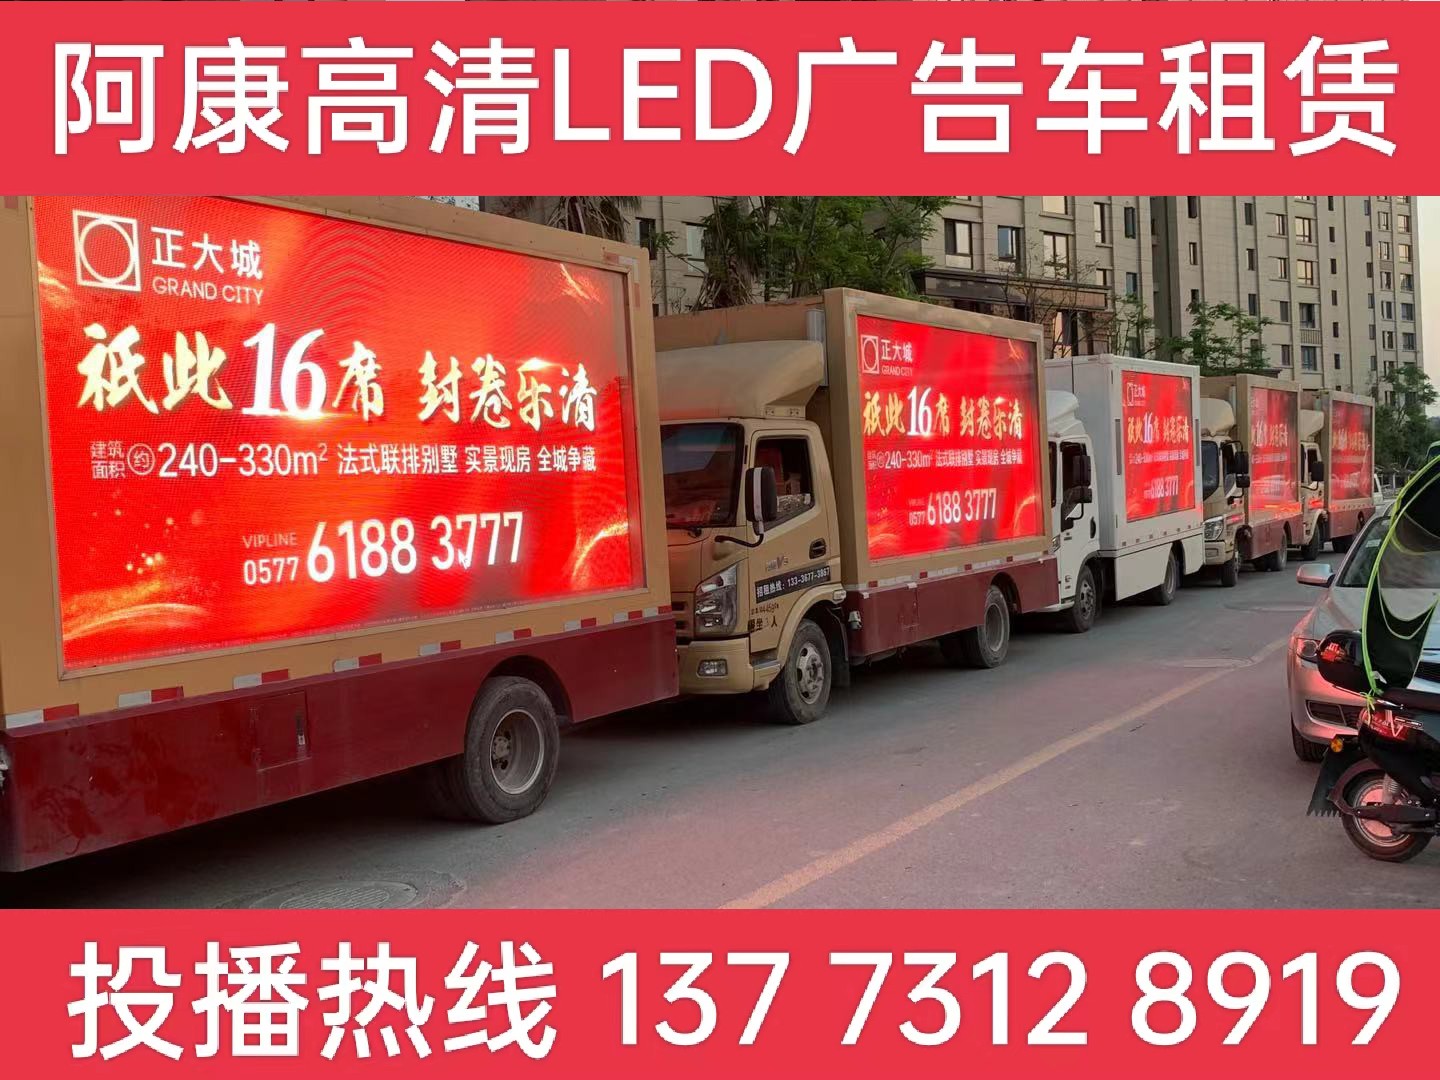 宣城LED广告车出租